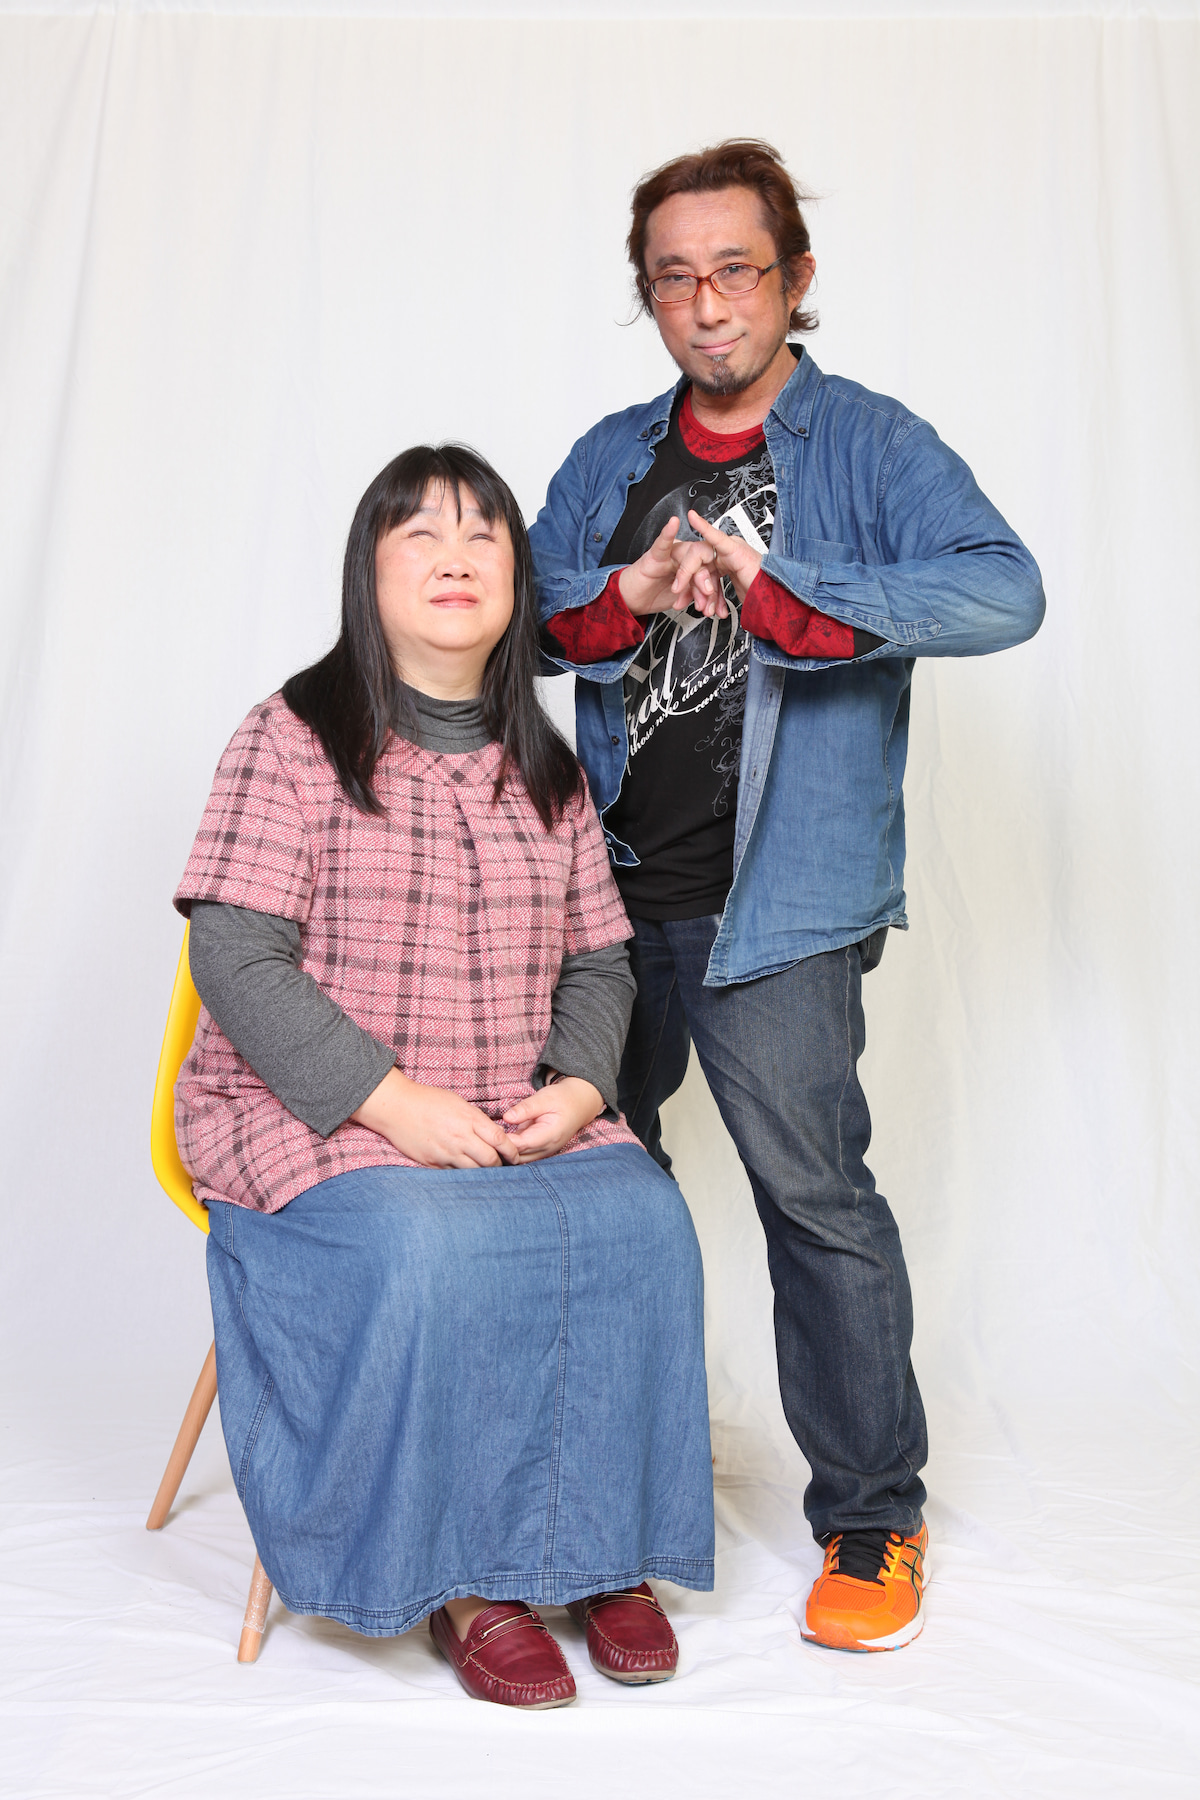 椅子に腰掛けた美月さんと、その横に立つ鈴木さんを写した写真です。鈴木さんは胸の前で、両手の指を絡ませています。左隣にいる美月さんは、両手を膝の上に置き、優しく微笑んでいます